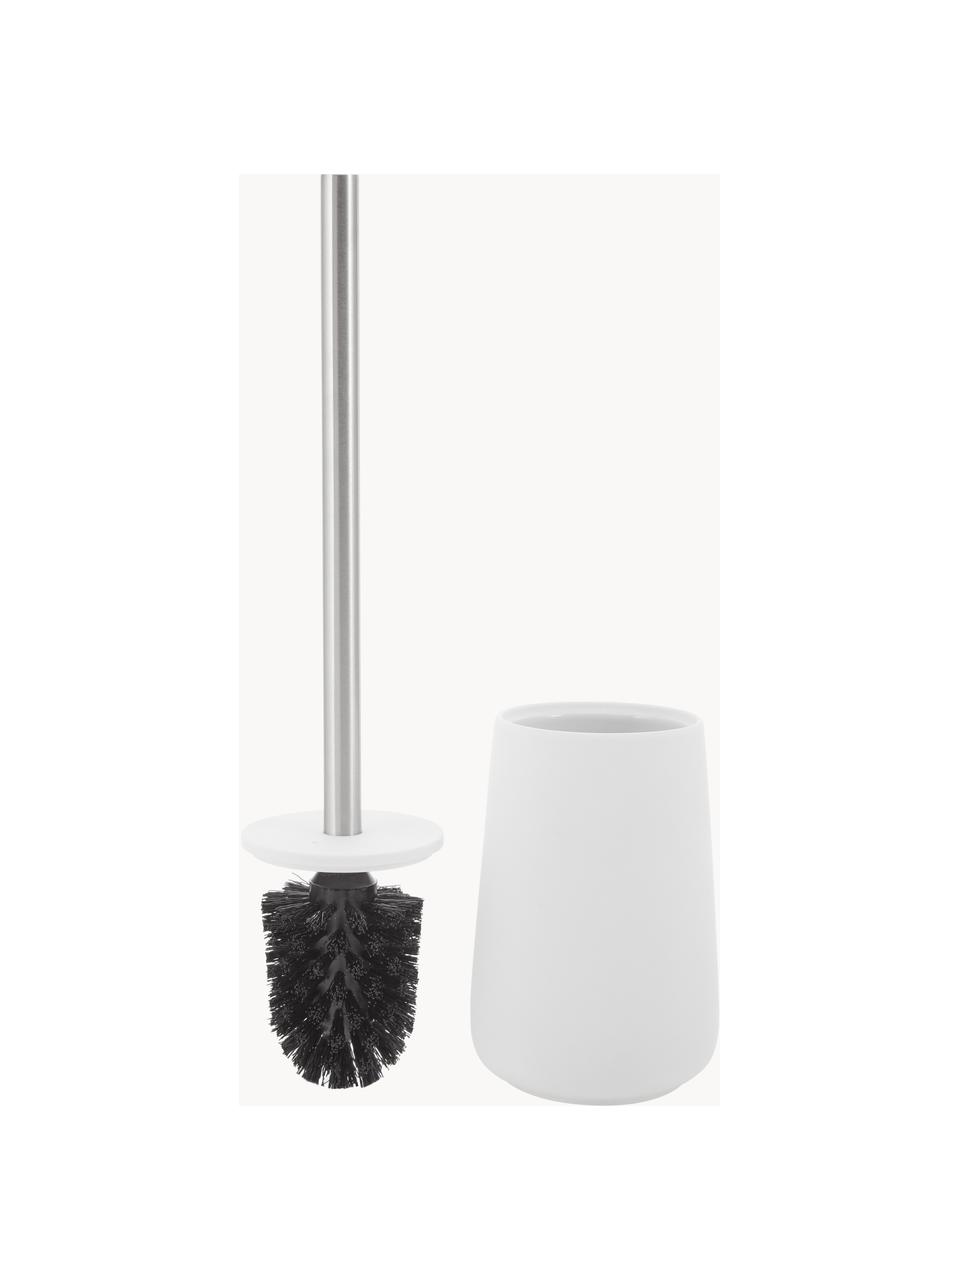 Toilettenbürste Nova mit Porzellan-Behälter, Behälter: Porzellan, Griff: Edelstahl, Weiß, Ø 10 x H 37 cm